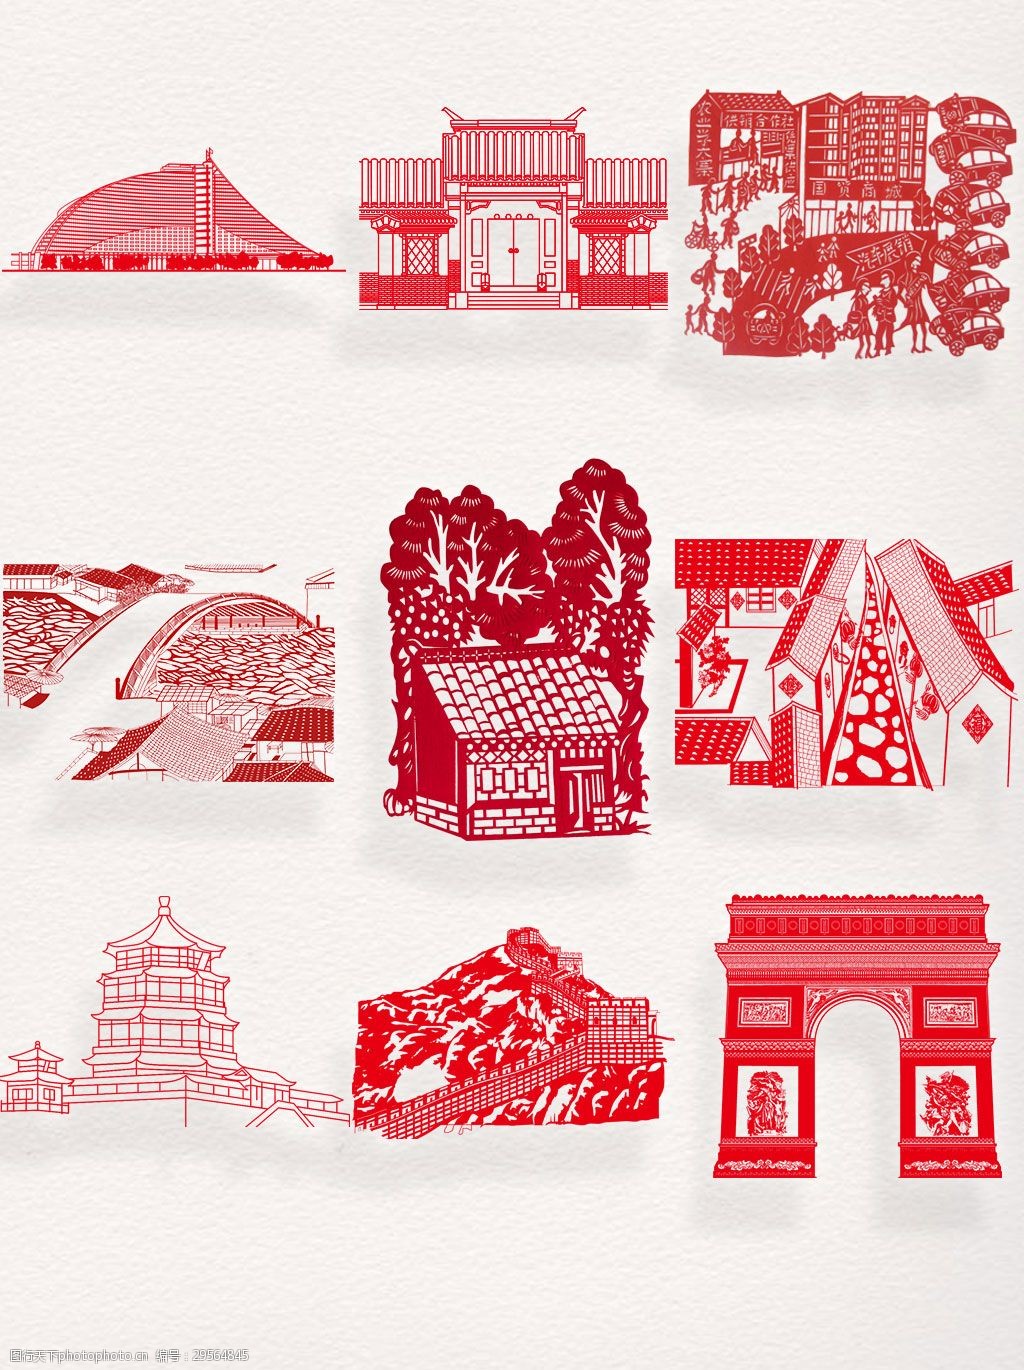 关键词:一组红色剪纸建筑元素设计 传统文化 剪纸素材 剪纸艺术 建筑